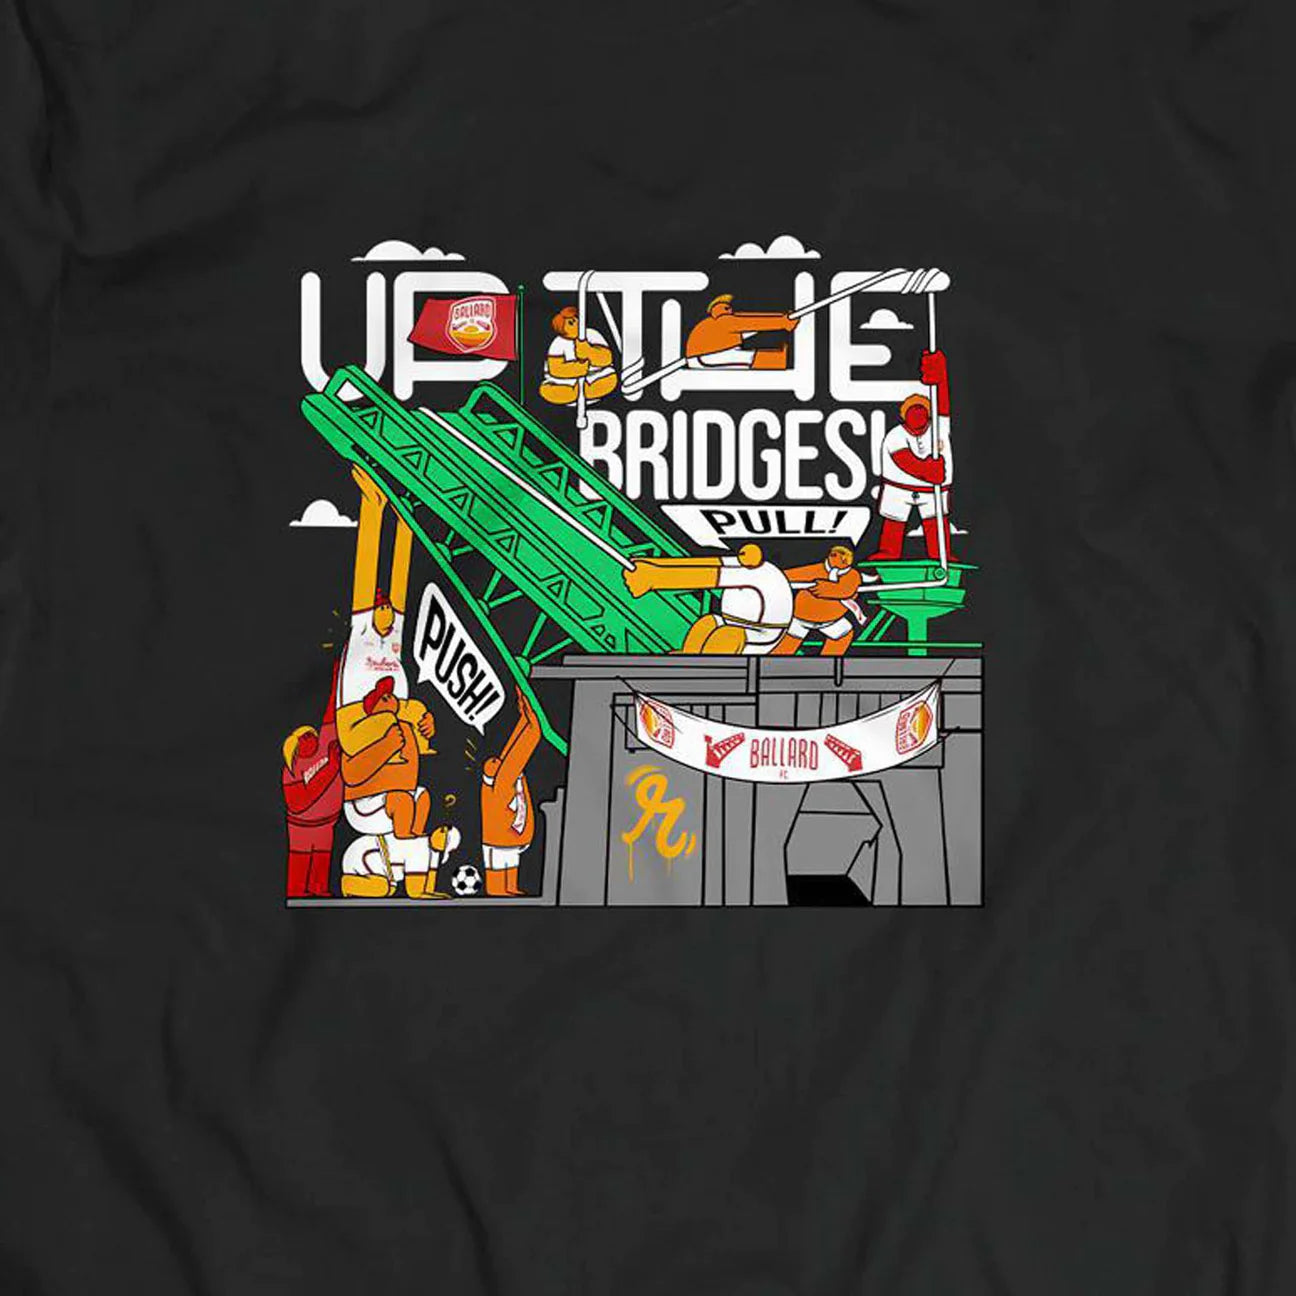 "Up the Bridges" T-Shirt